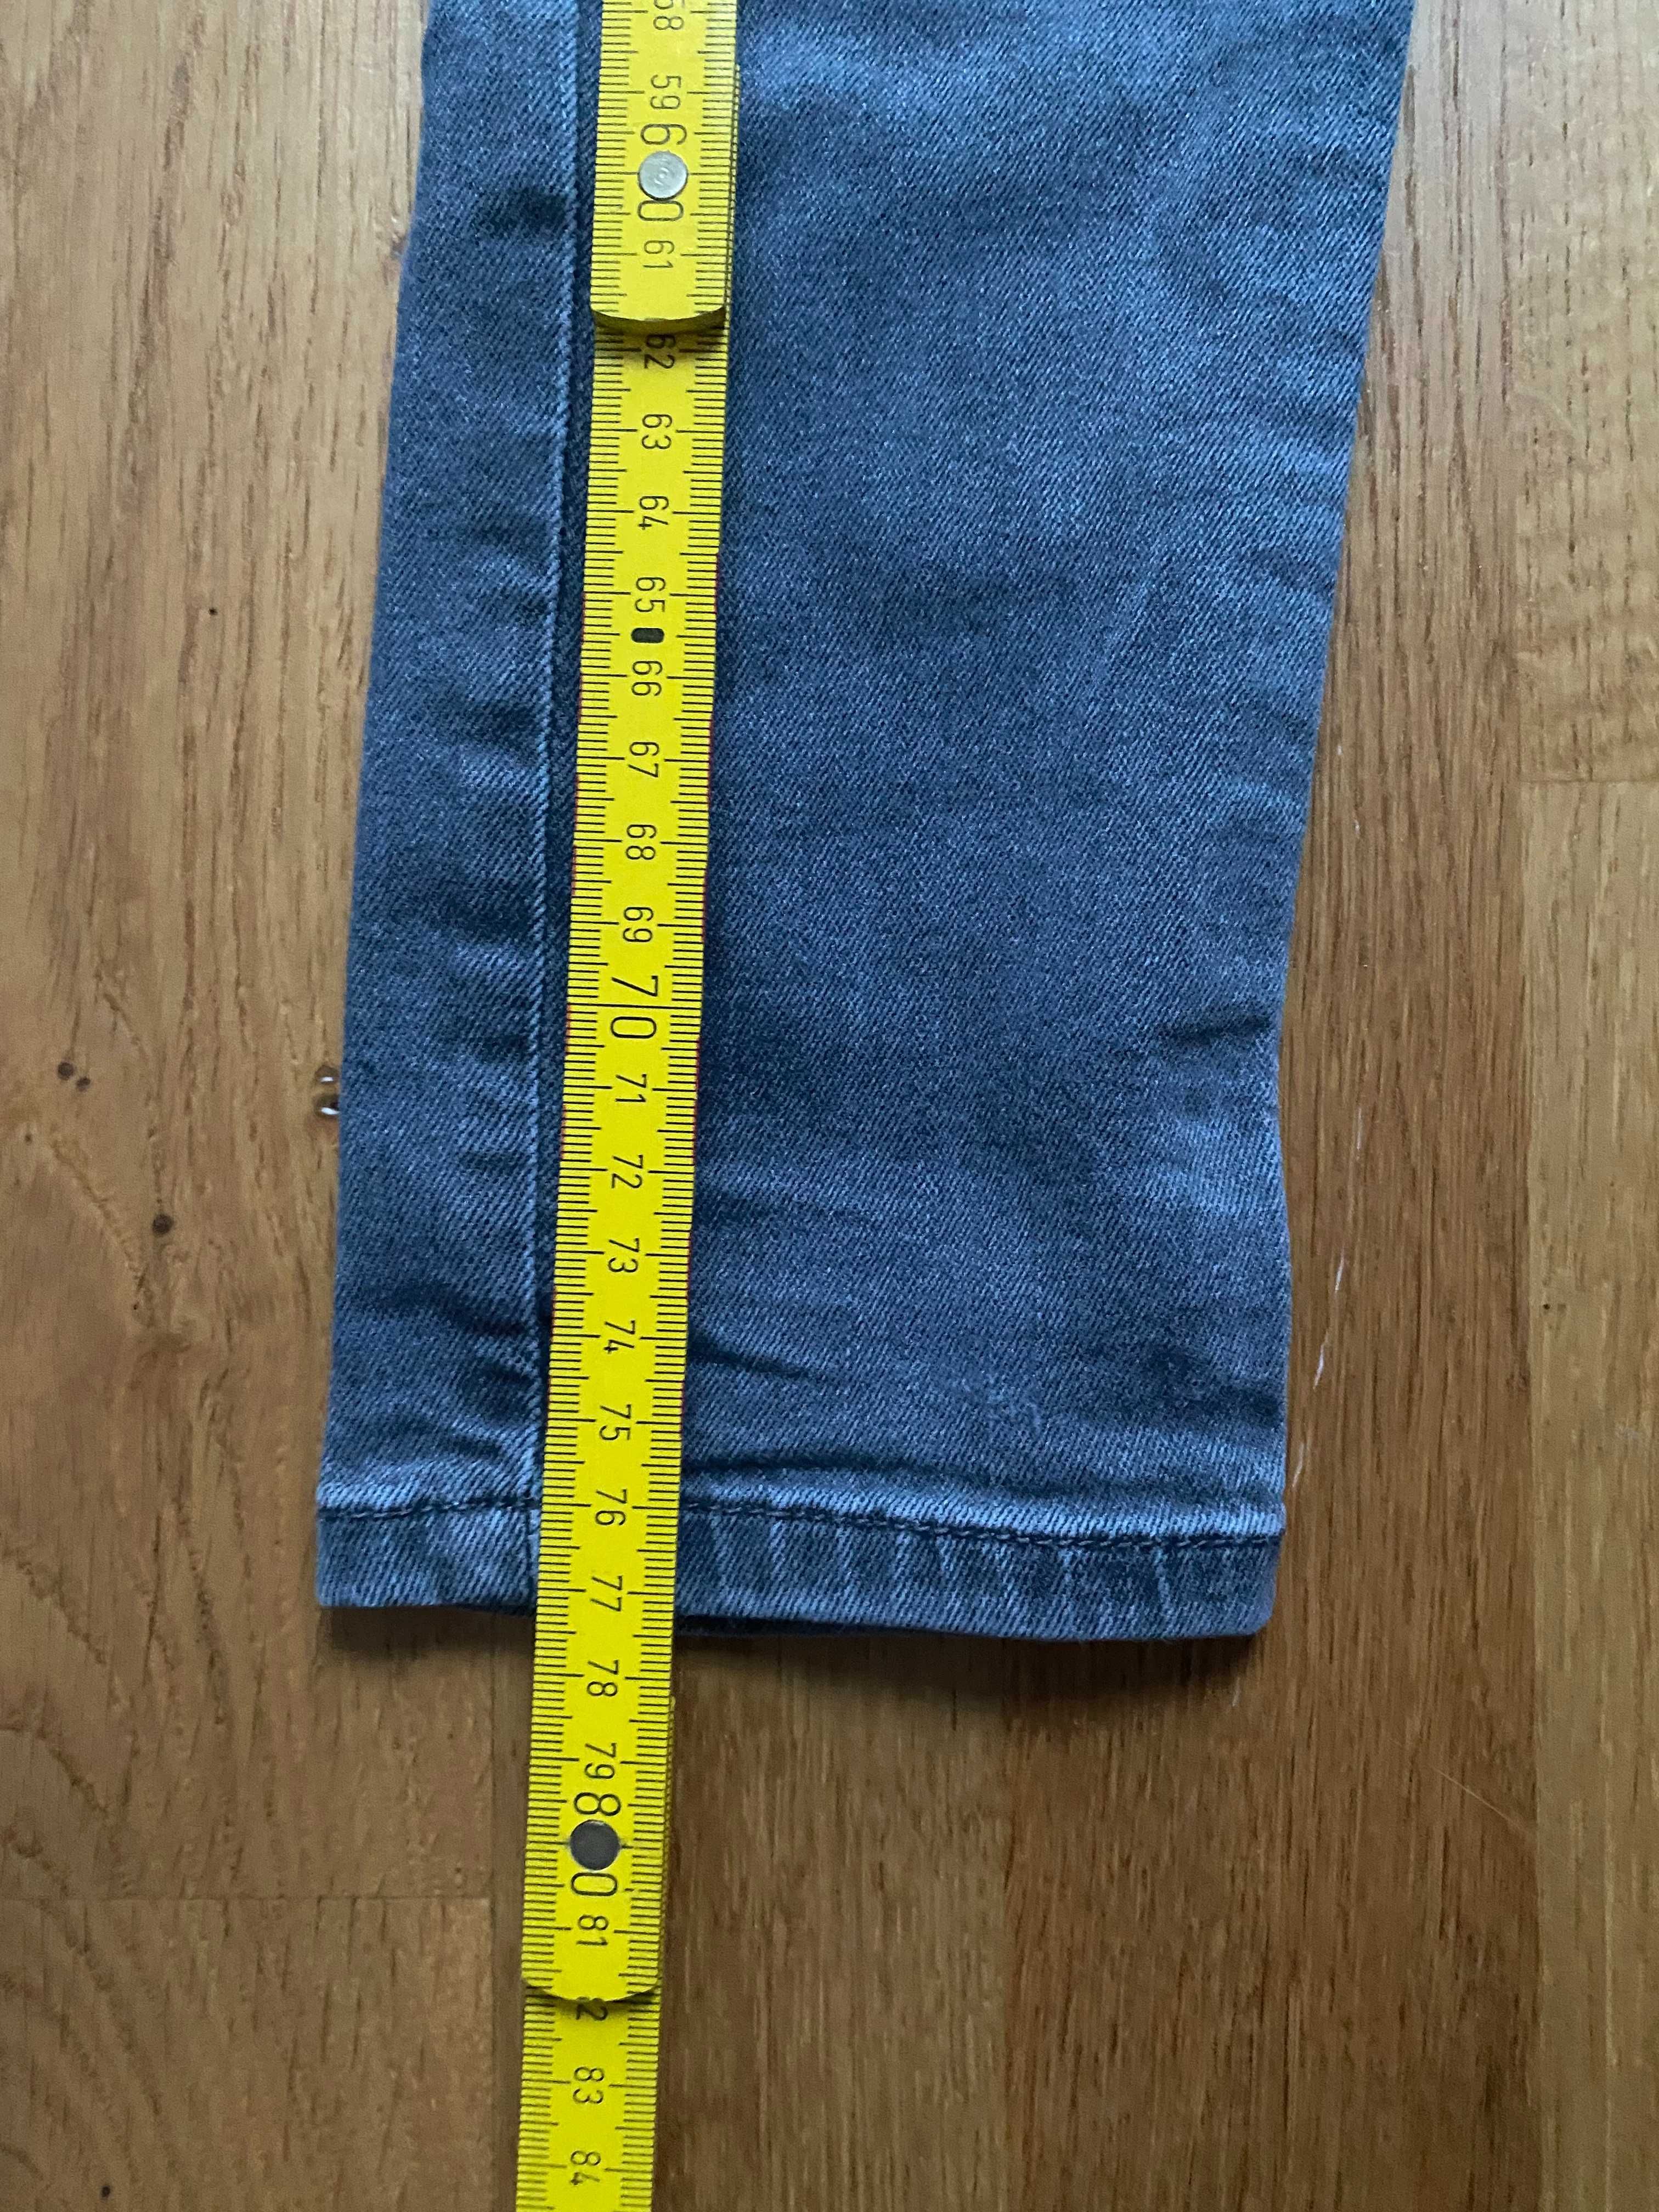 Spodnie ZARA chłopięce jeansowe rozmiar 128